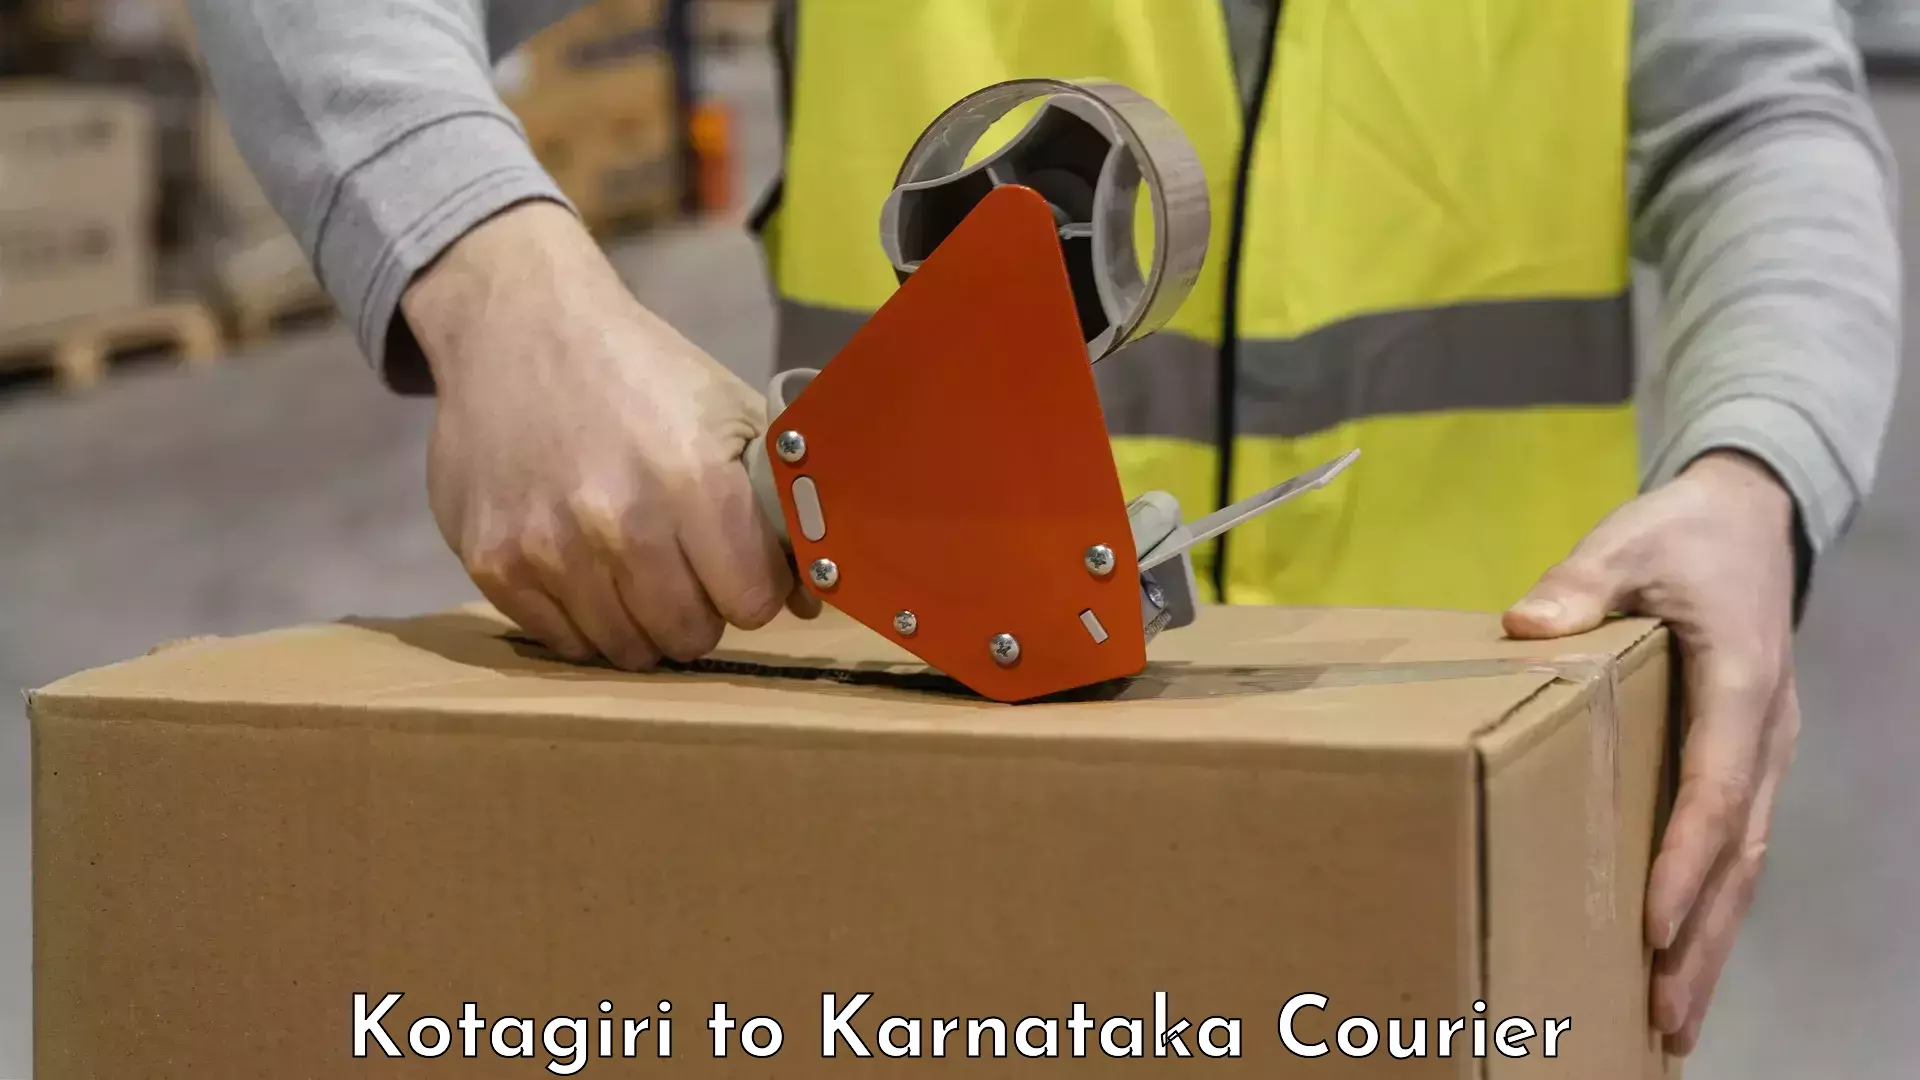 Luggage transport deals Kotagiri to Karnataka